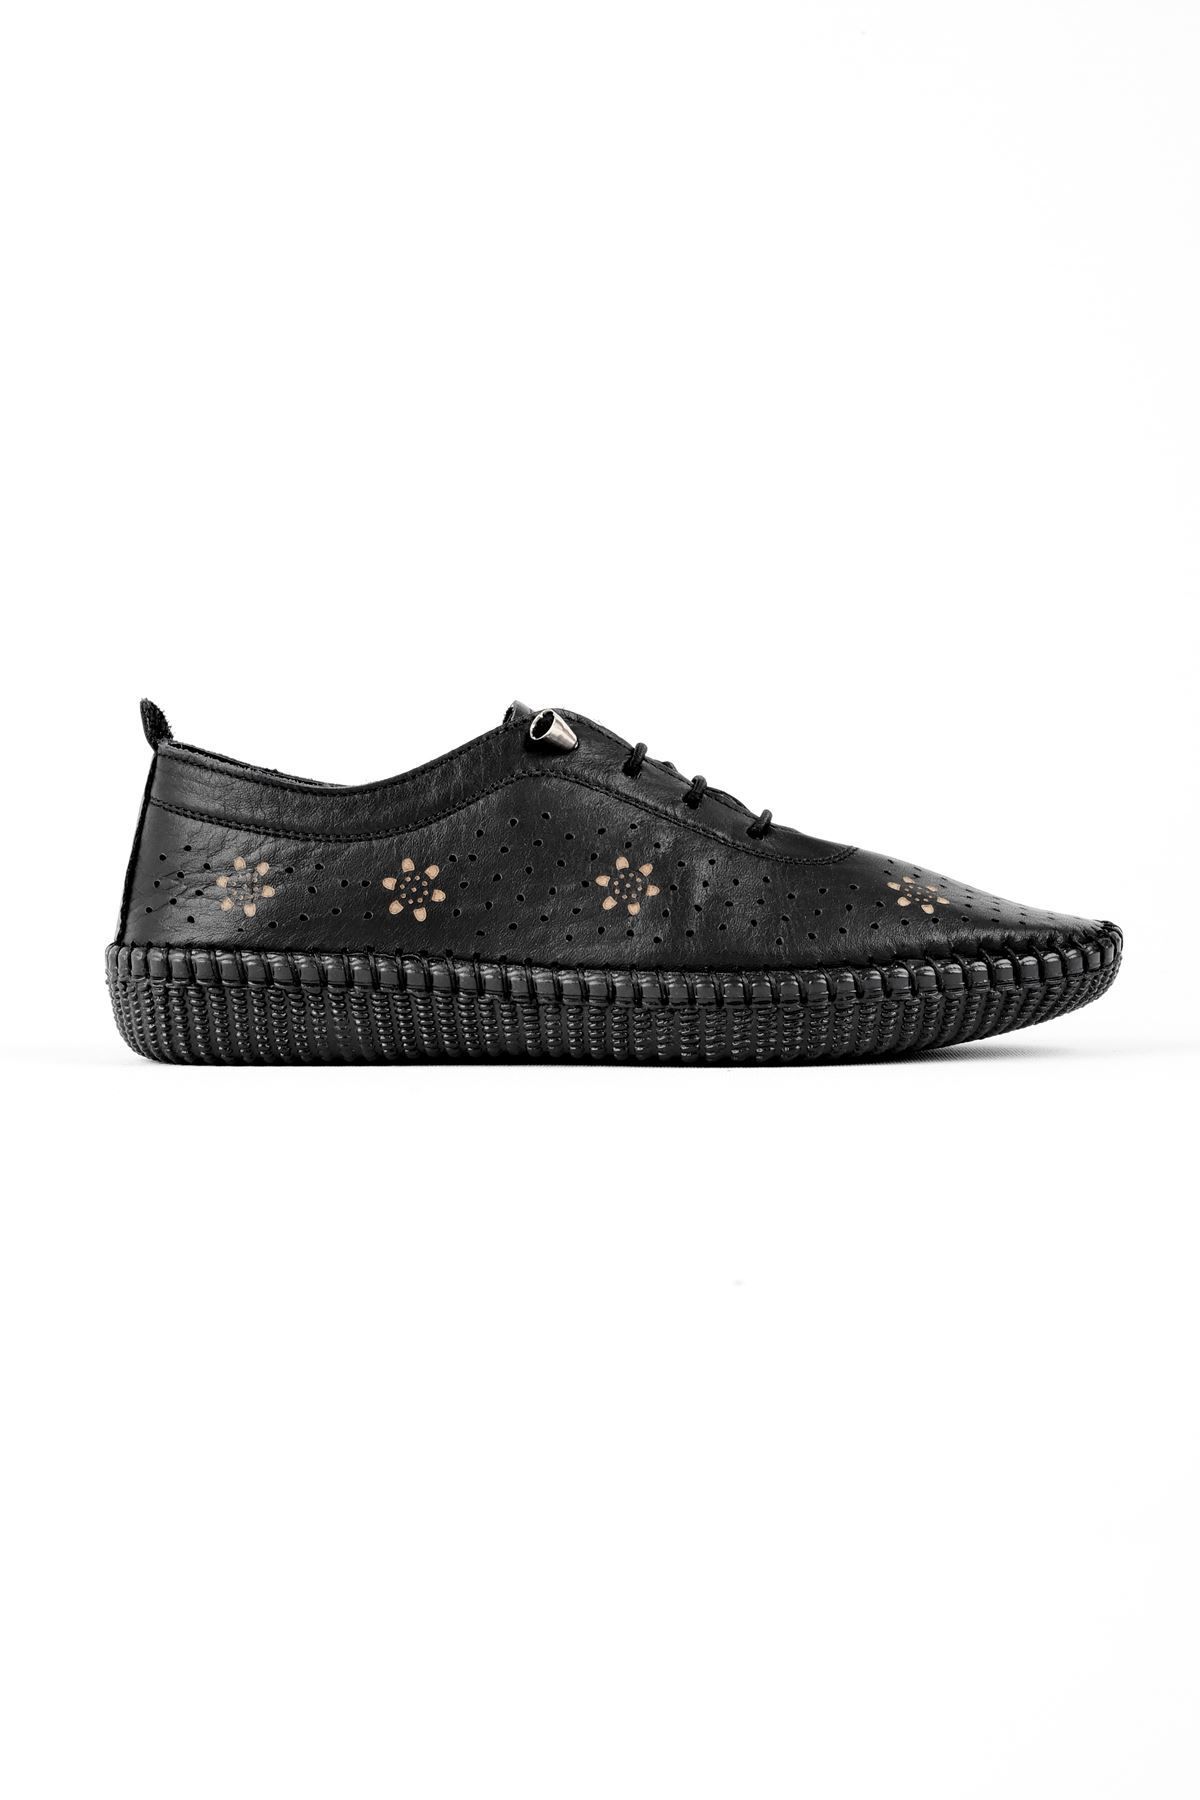 LAL SHOES & BAGS Mosen Lazer Çiçek Baskılı Hakiki Deri Kadın Günlük Ayakkabı-siyah